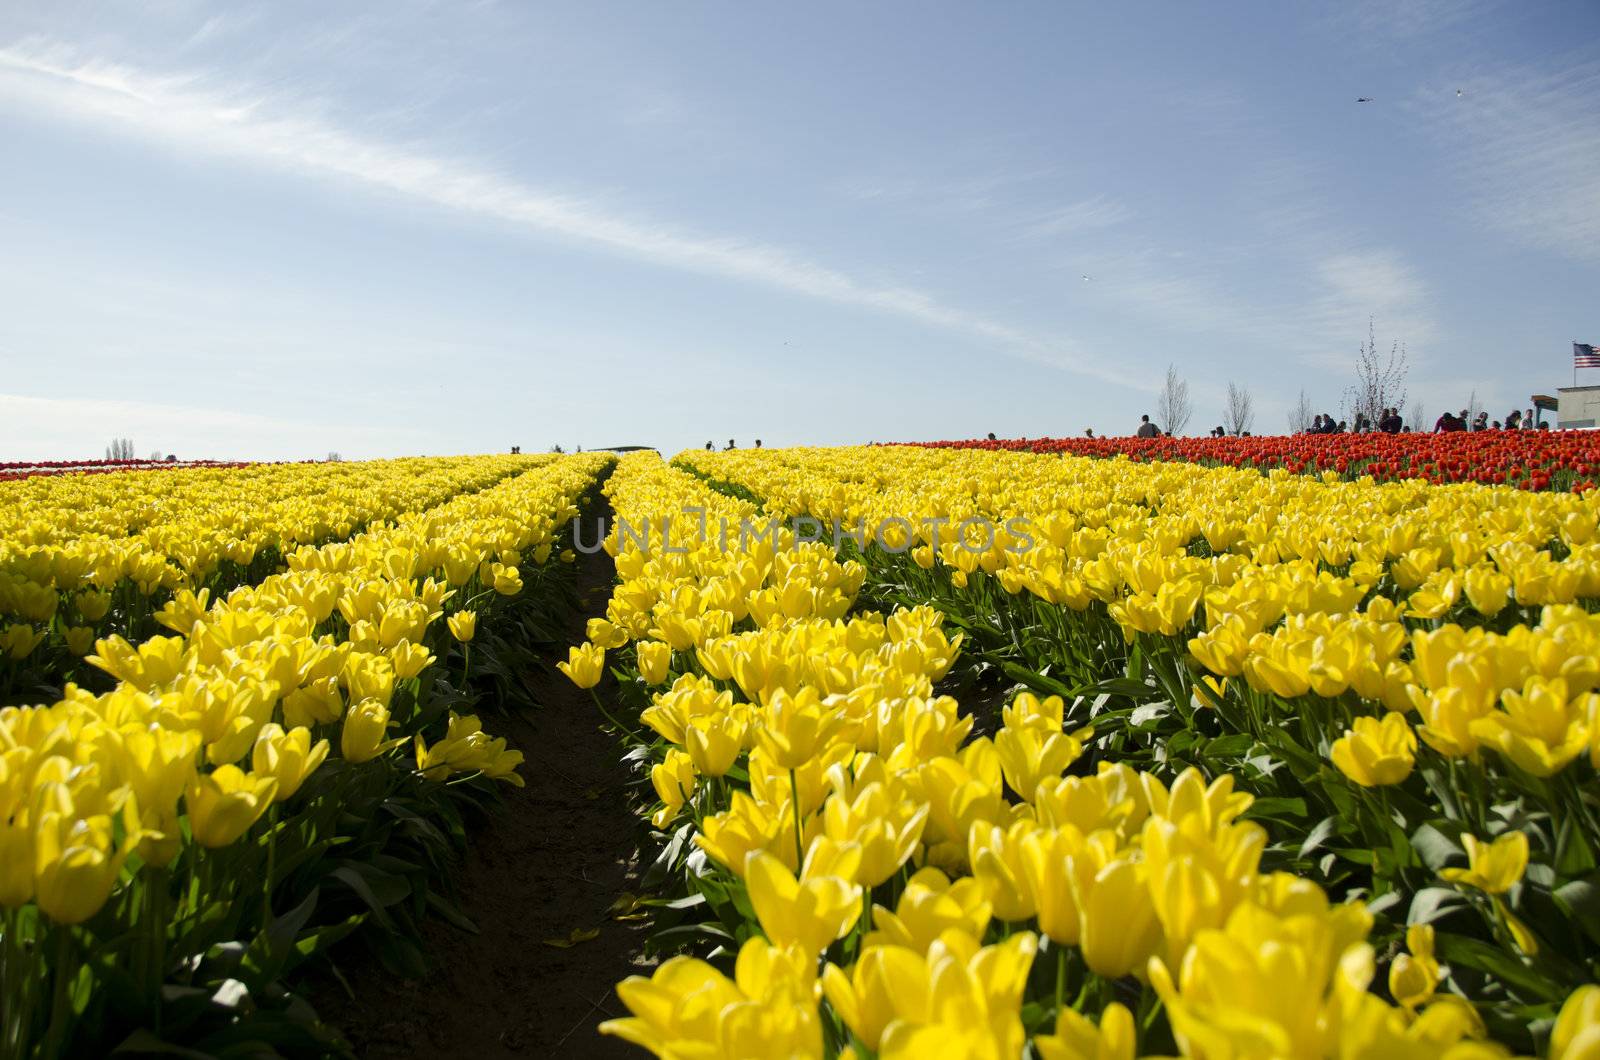 Field of tulips field by seattlephoto